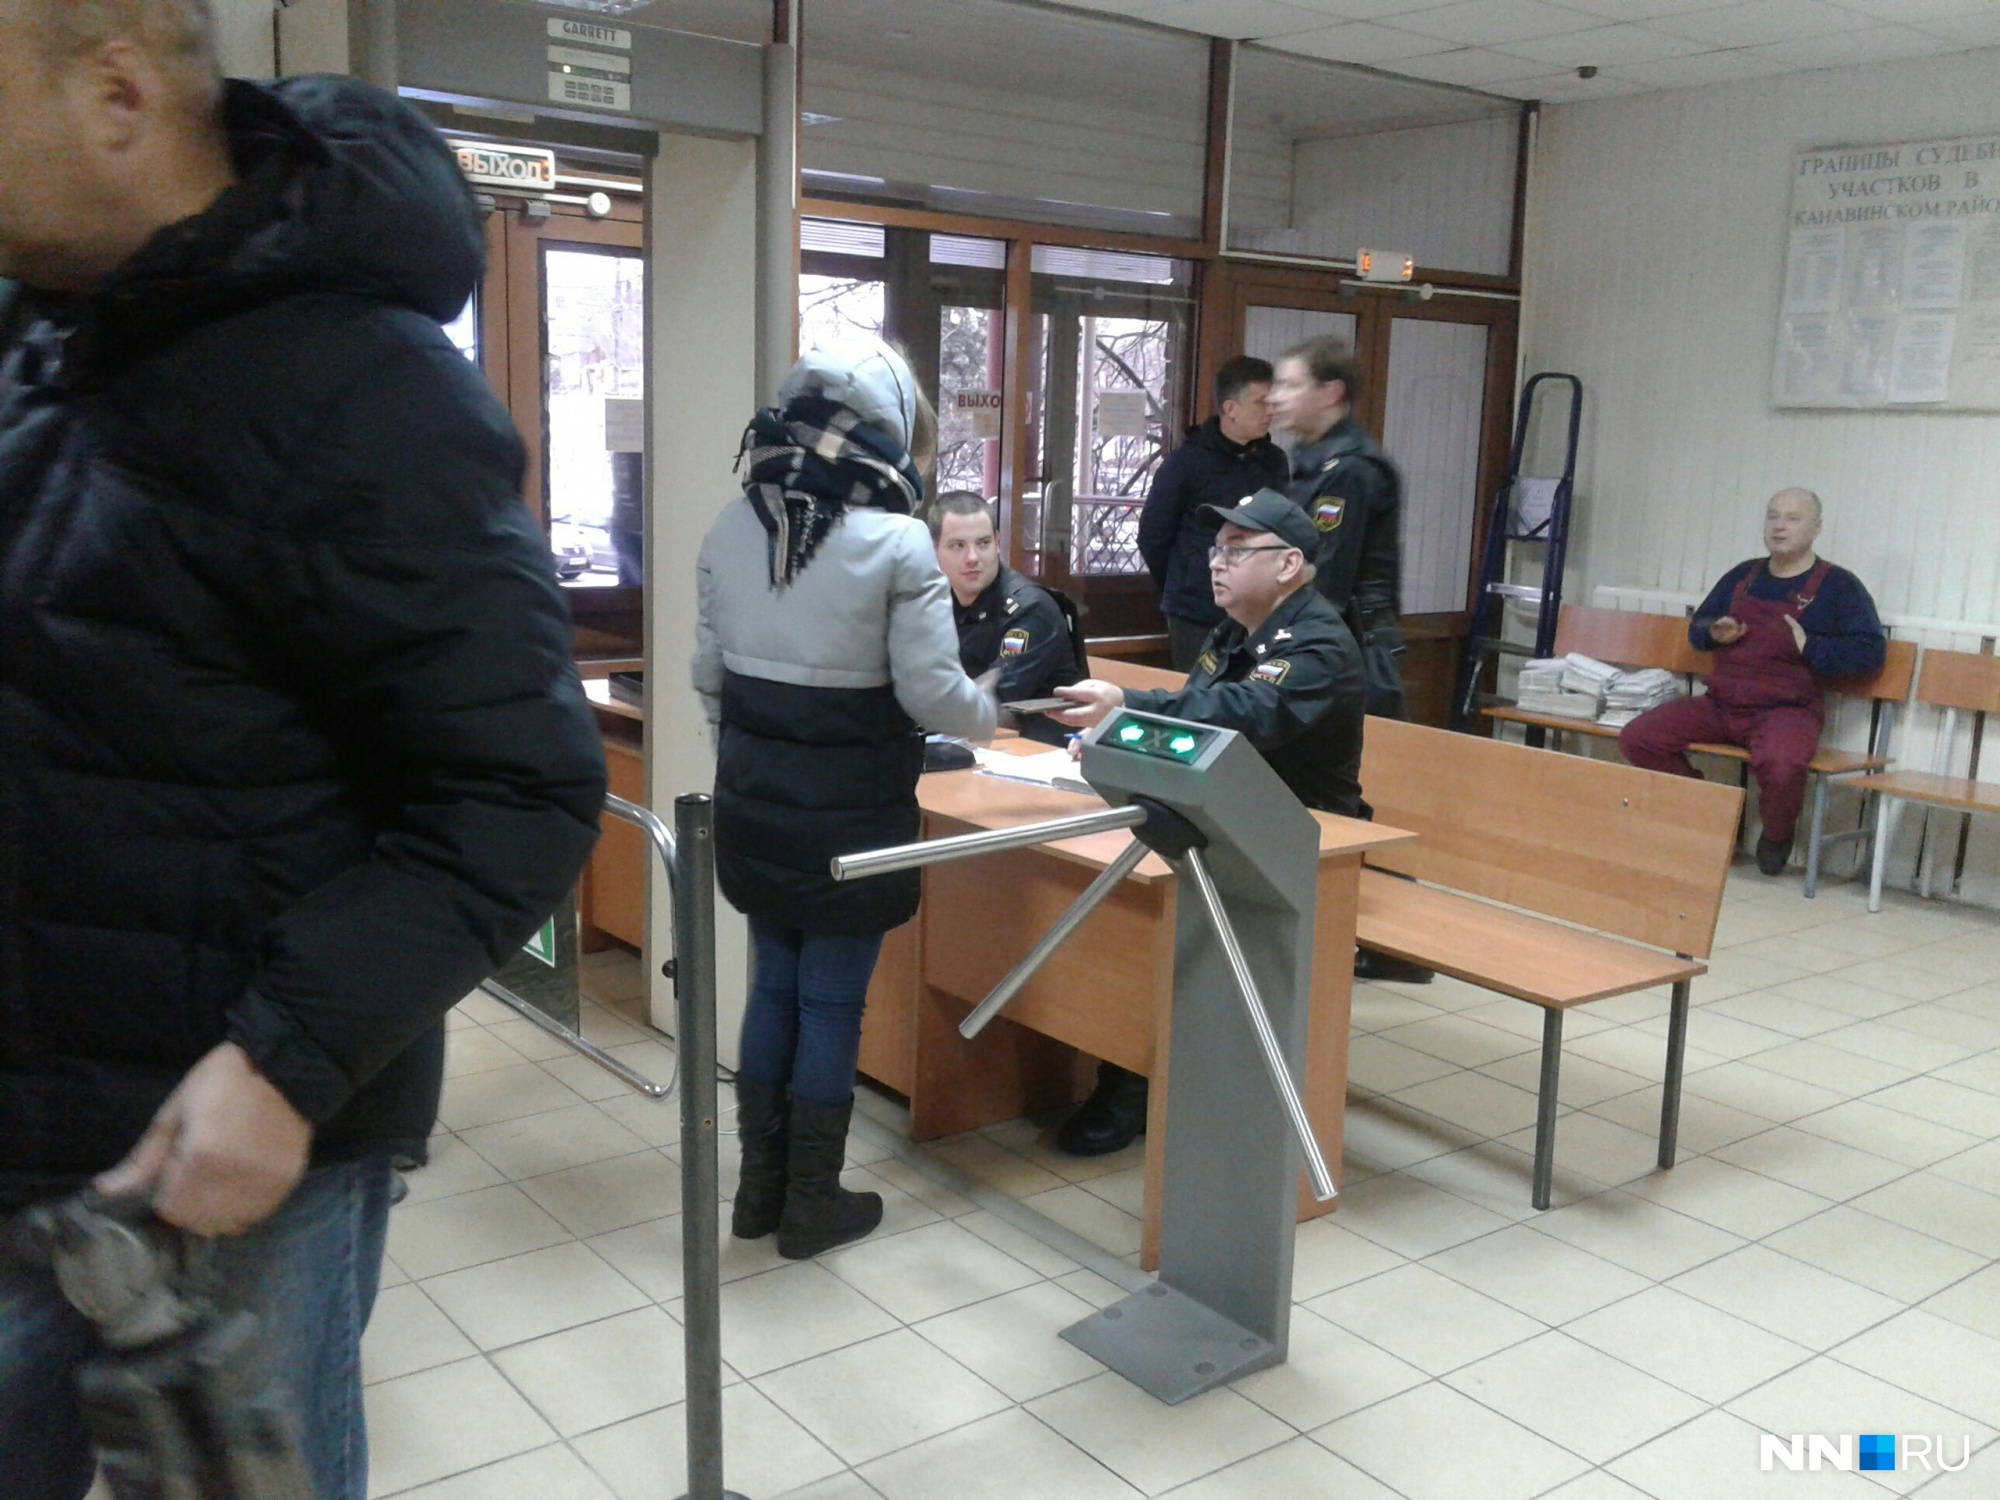 Секс в нижегородском метро обошелся молодой паре в 50 тысяч рублей